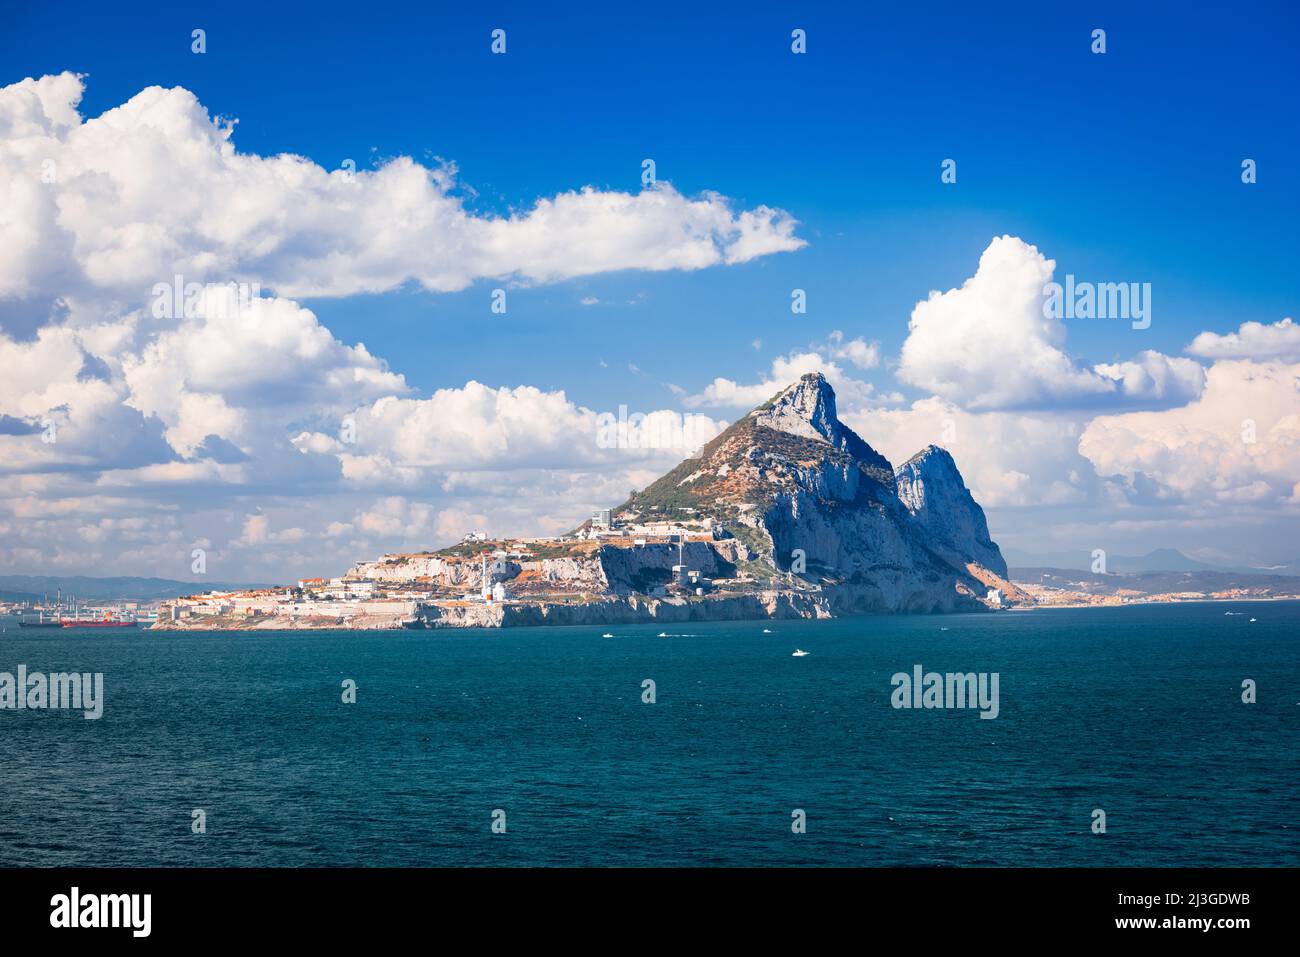 Le Rocher de Gibraltar, un territoire britannique d'outre-mer situé à l'extrémité sud de la péninsule ibérique. Banque D'Images